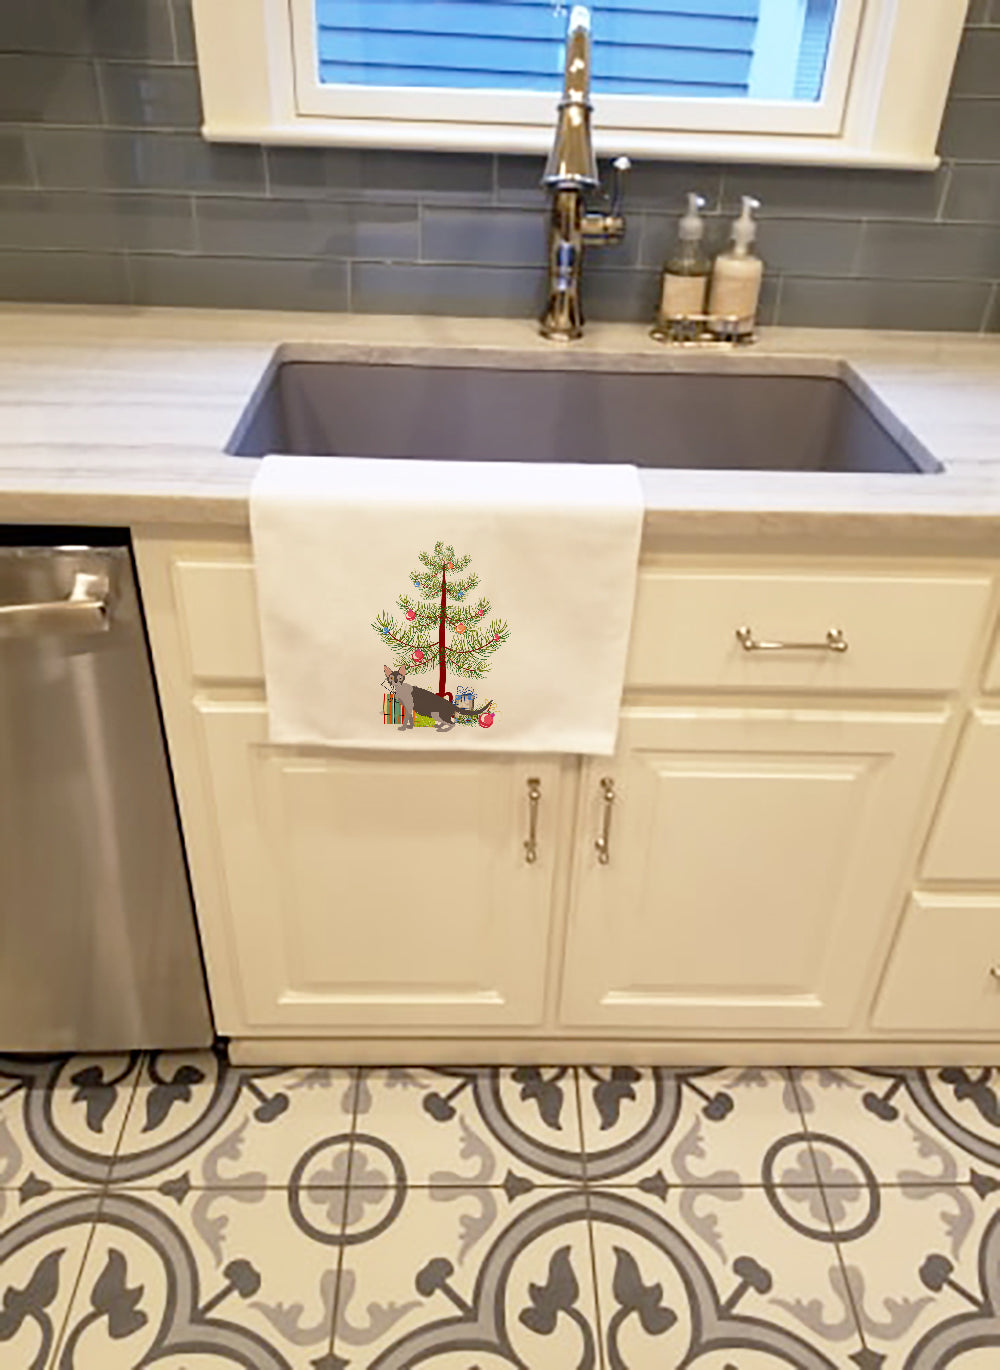 Buy this Lykoi #2 Cat Merry Christmas White Kitchen Towel Set of 2